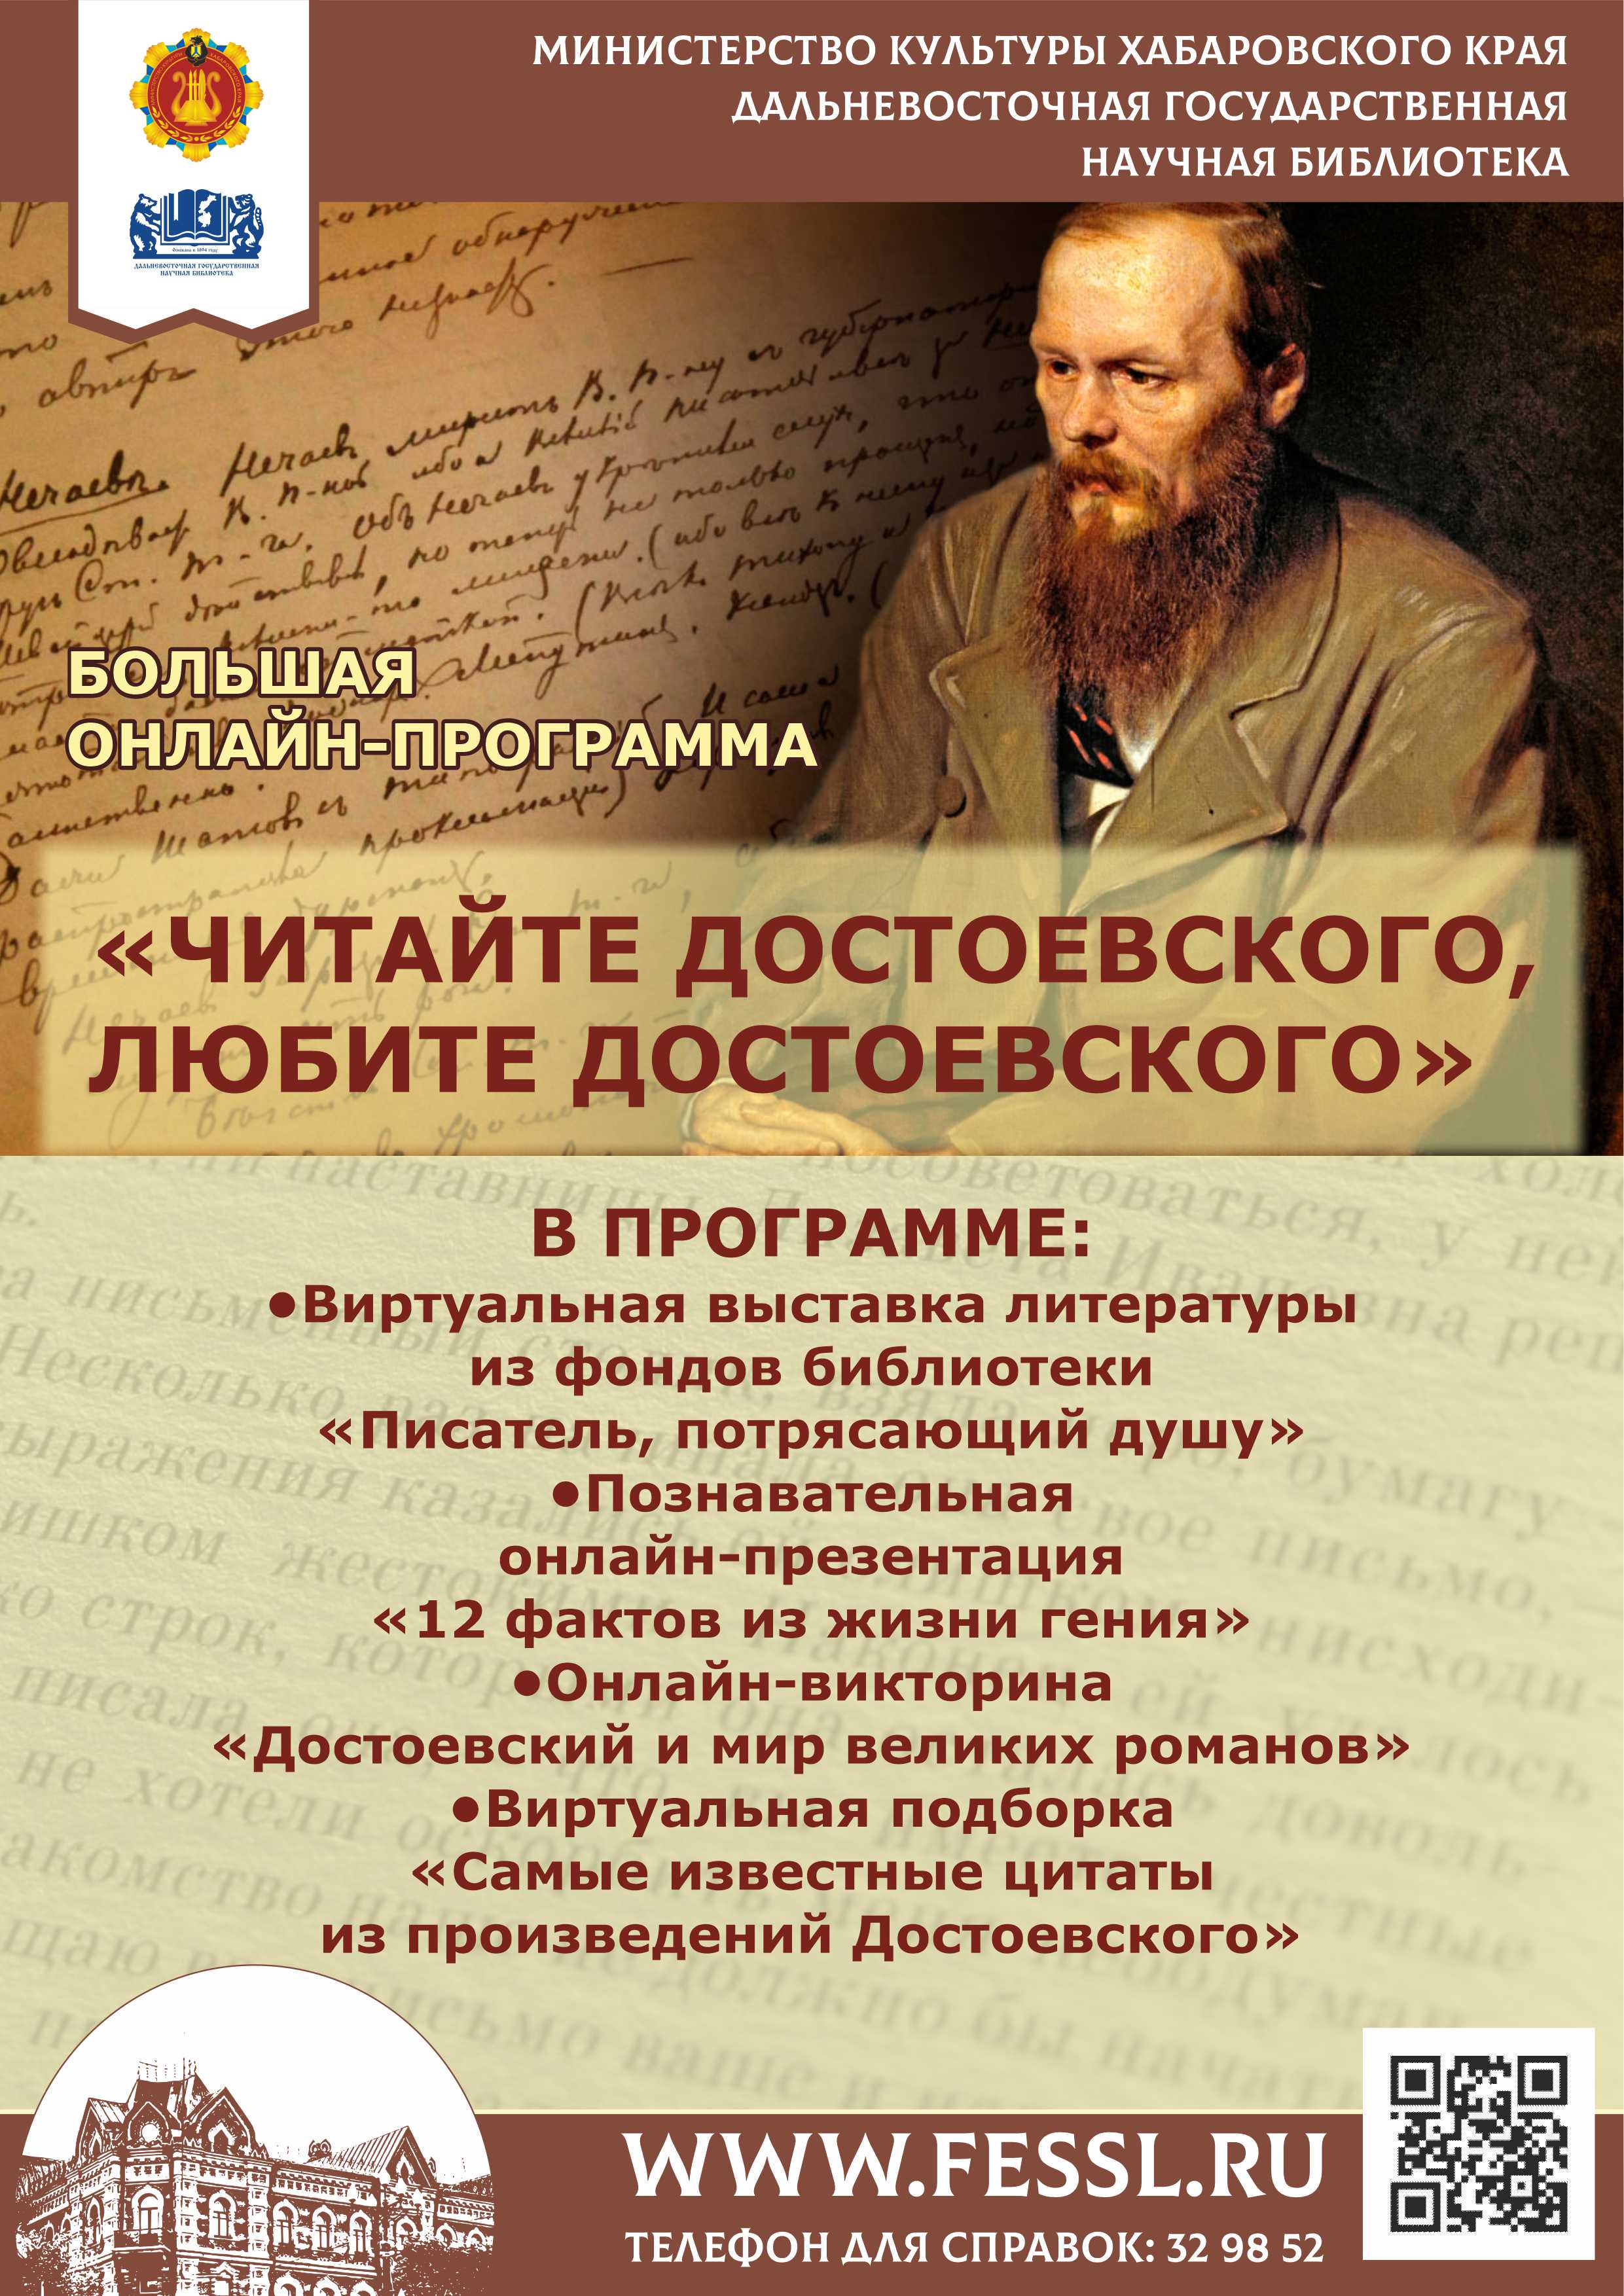 Библиотека представляет большую онлайн-программу «Читайте Достоевского, любите Достоевского». 